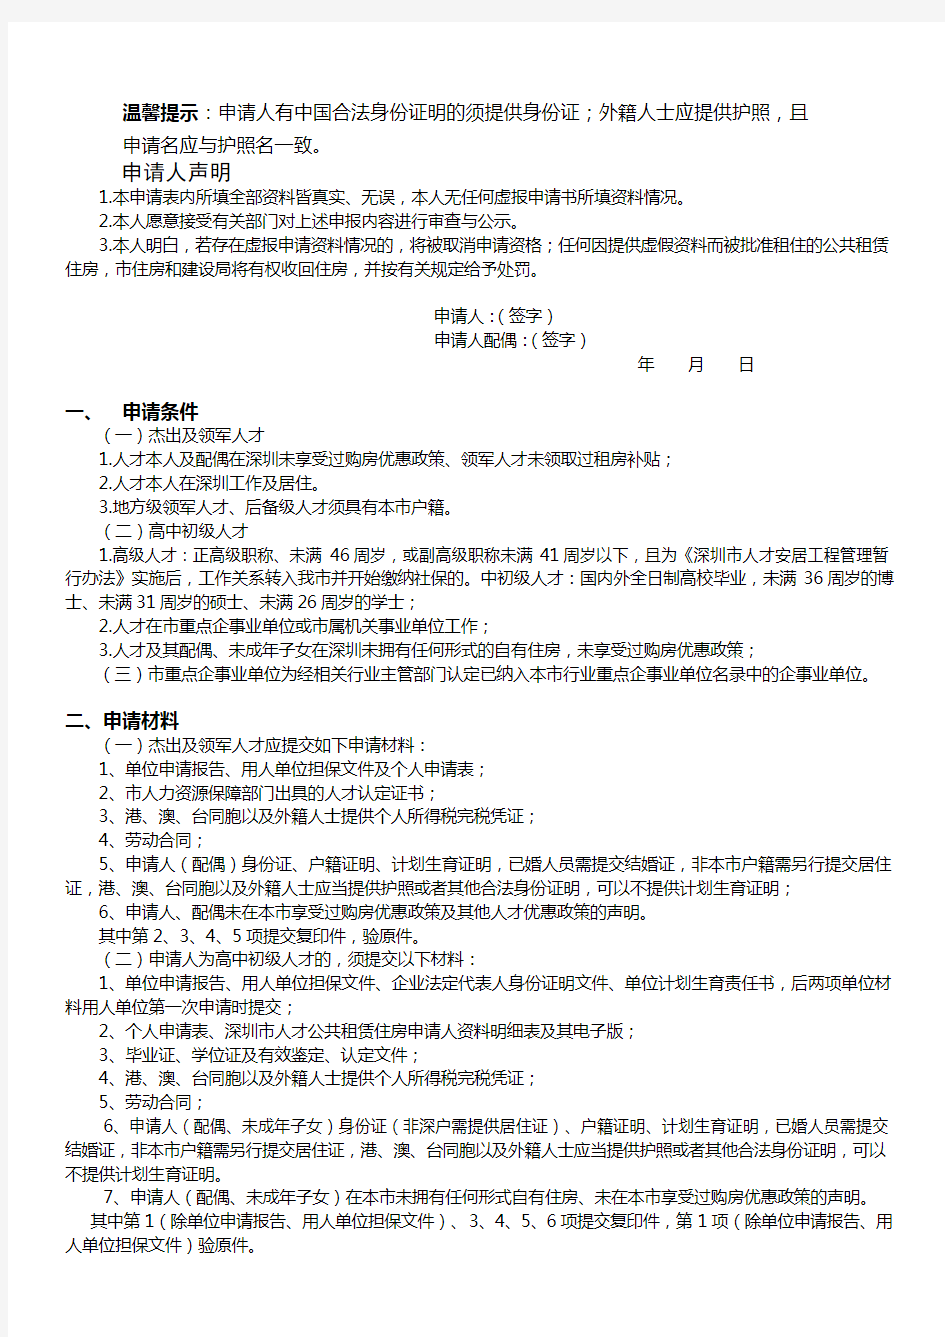 深圳市人才公共租赁住房个人申请表【模板】